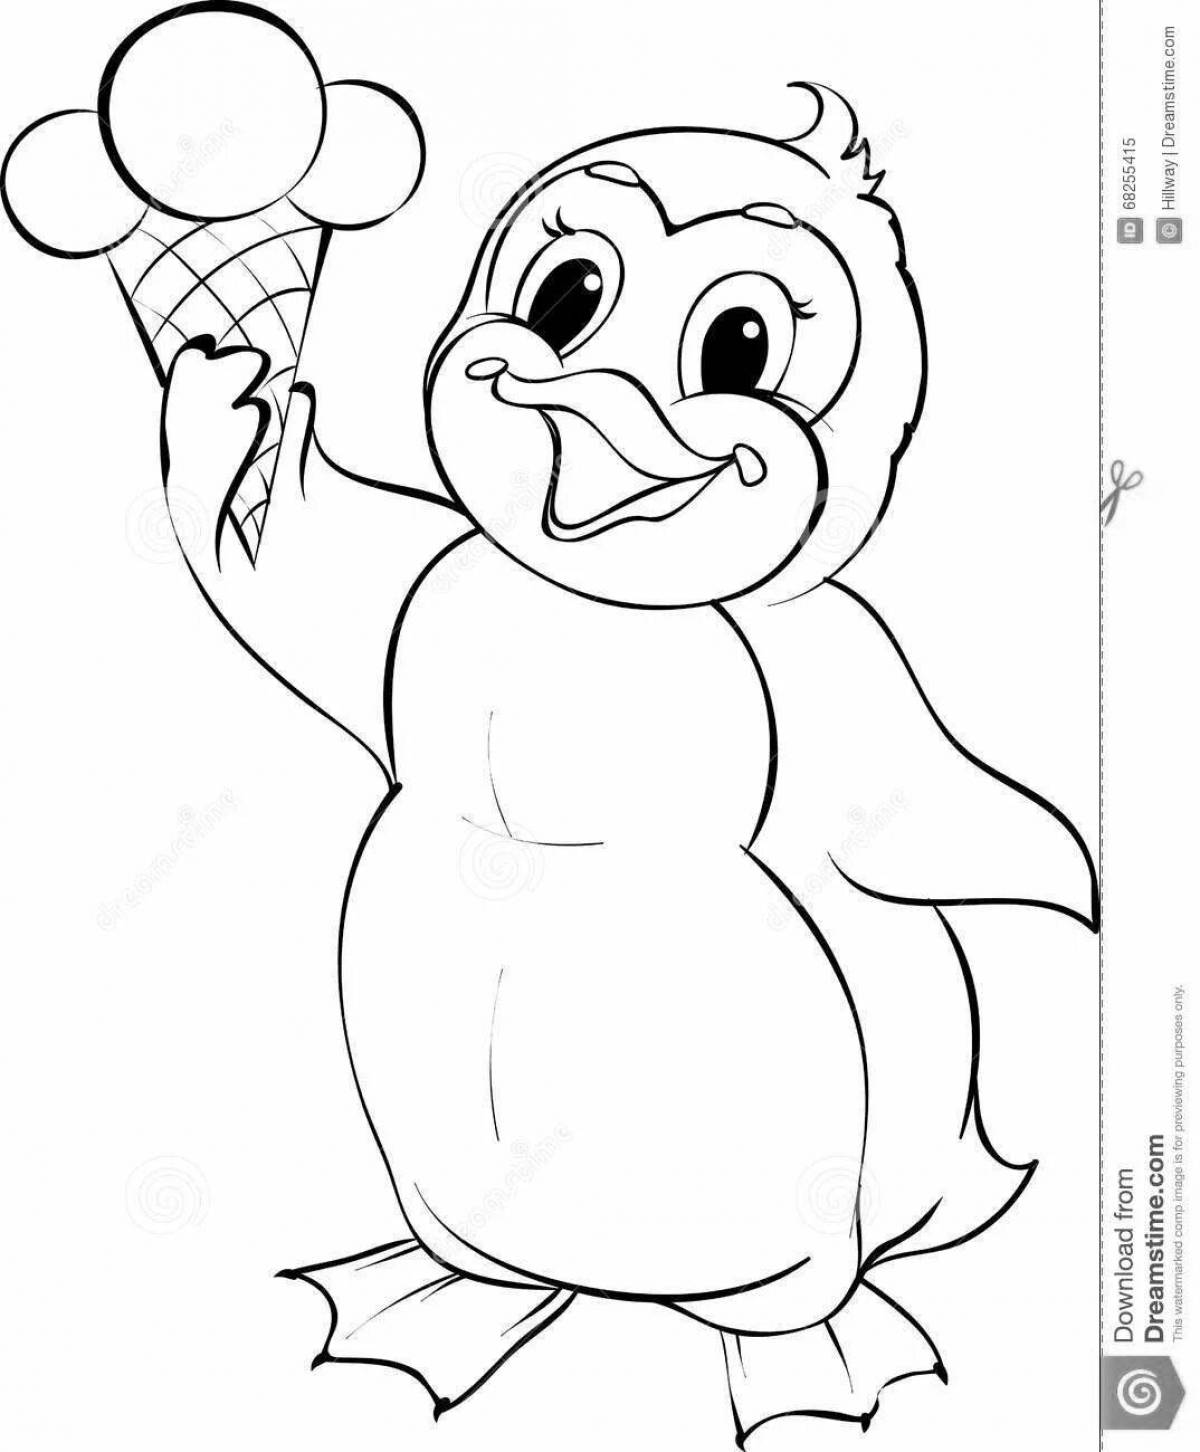 Пингвиненок Лоло раскраска для детей